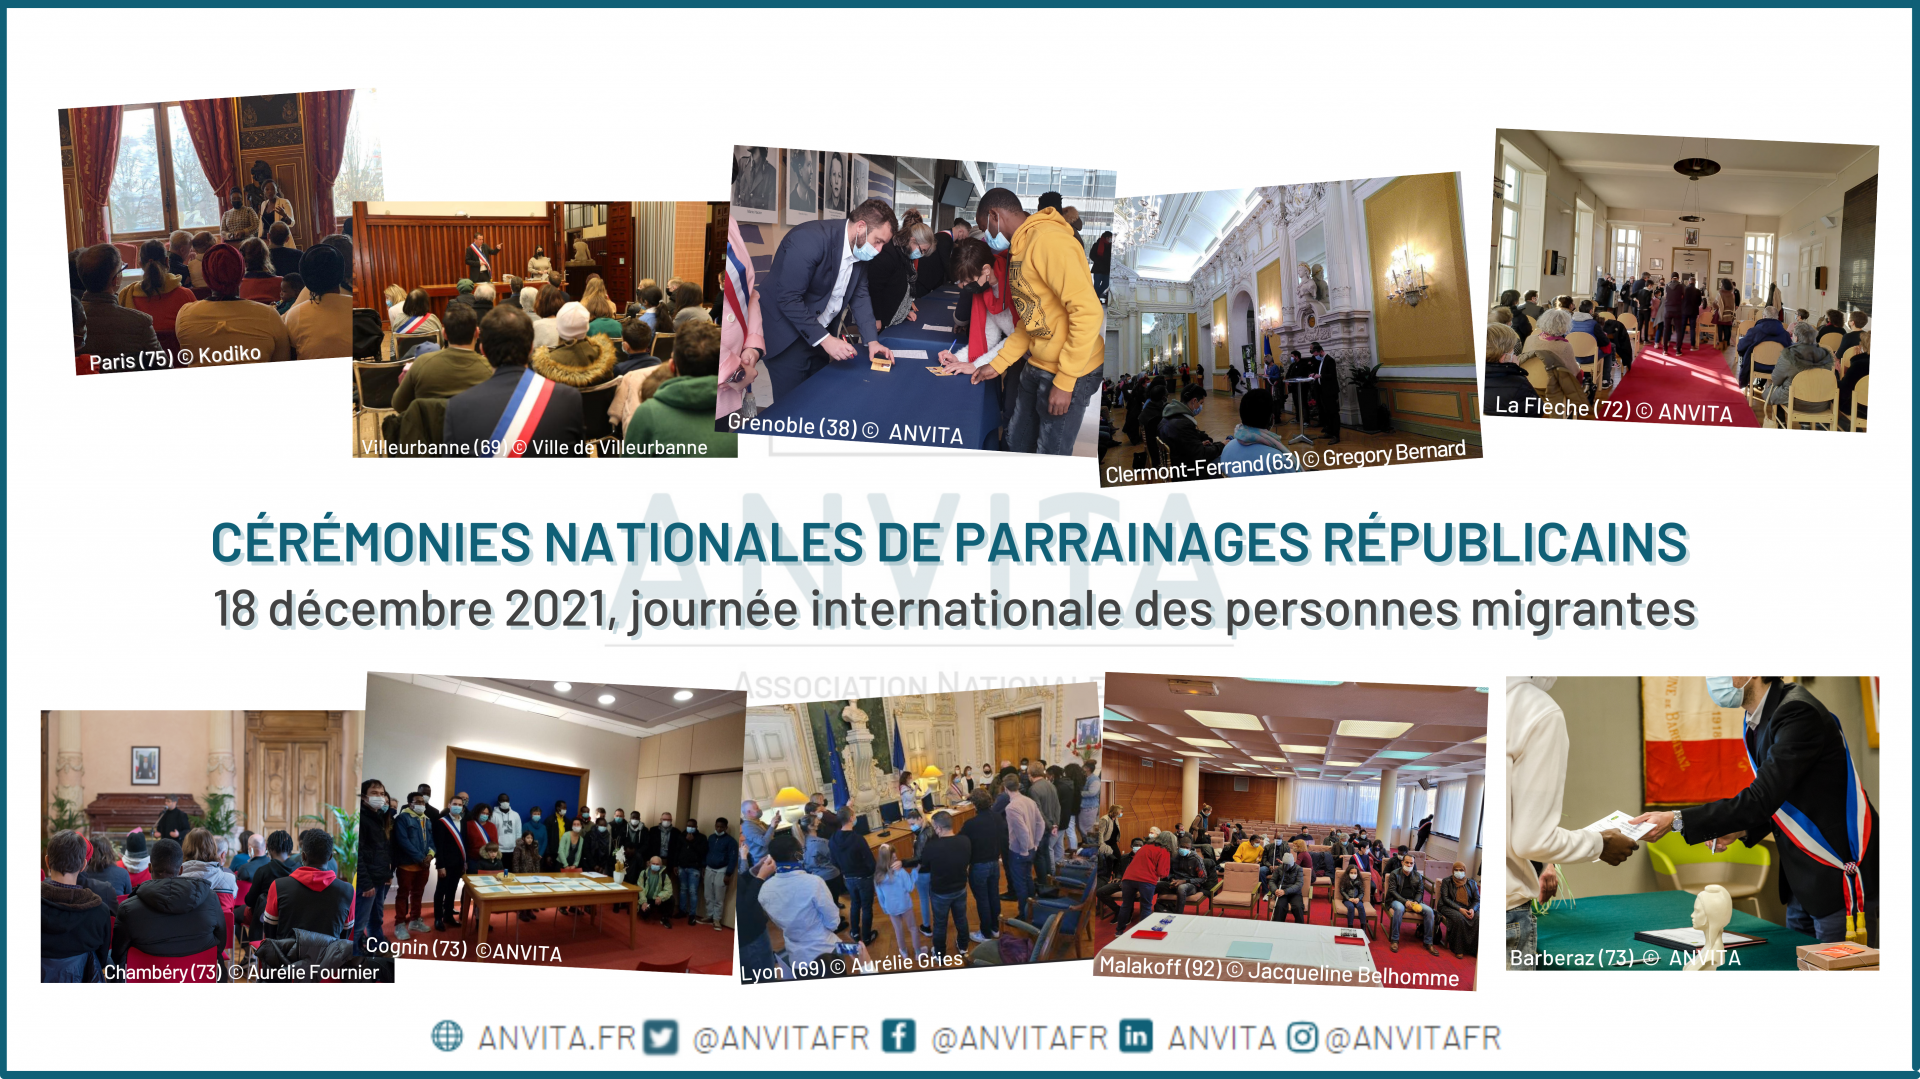 Ceremonies nationales de parrainages republicains 18 decembre journee internationale des personnes migrantes3